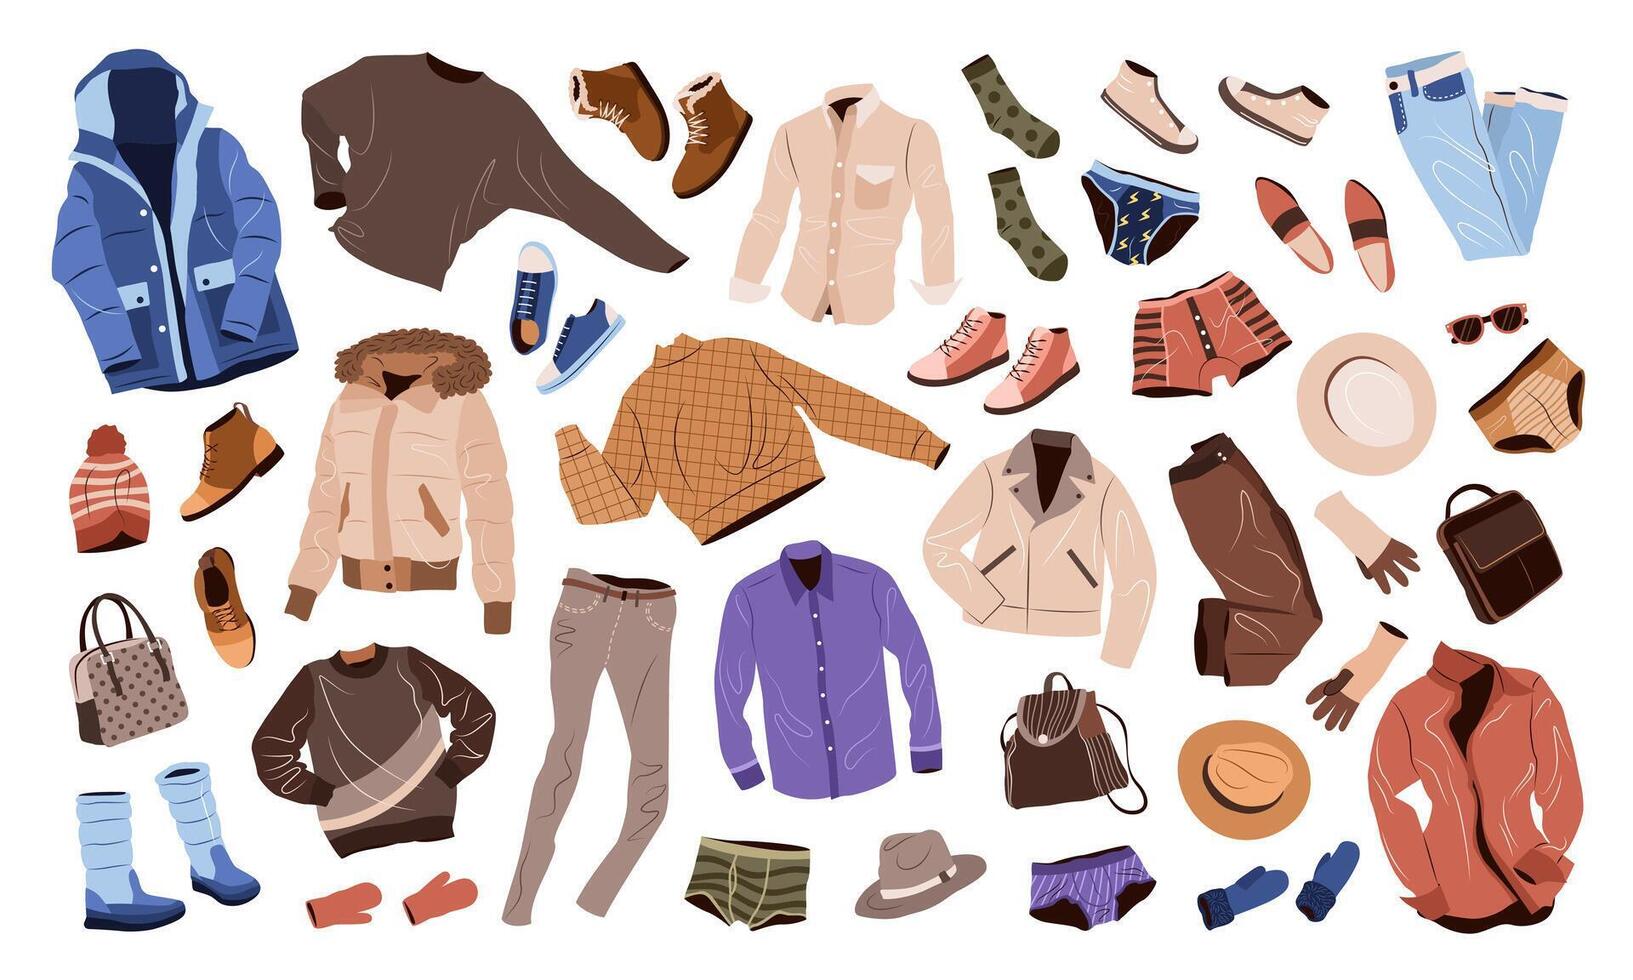 Herren Kleidung einstellen im beiläufig Stil. Mode Kleidung, Zubehör, Schuhe, Taschen zum fallen und Winter. isoliert eben Vektor Abbildungen auf Weiß Hintergrund.